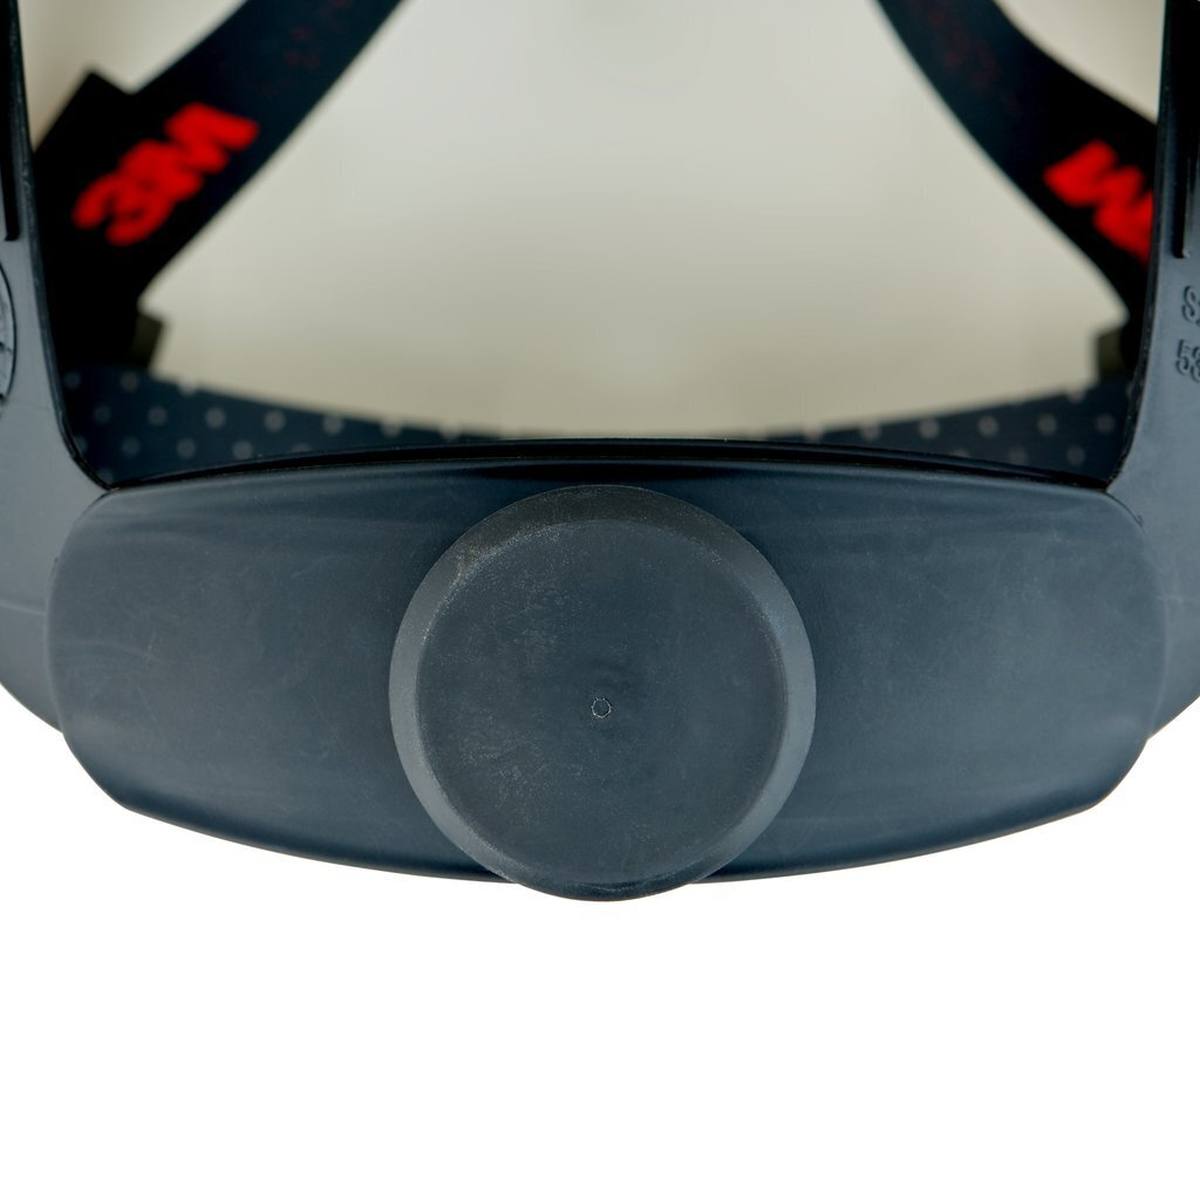 elmetto di sicurezza 3M G3000 G30NUW di colore bianco, ventilato, con uvicatore, cricchetto e cinturino in plastica per saldatura